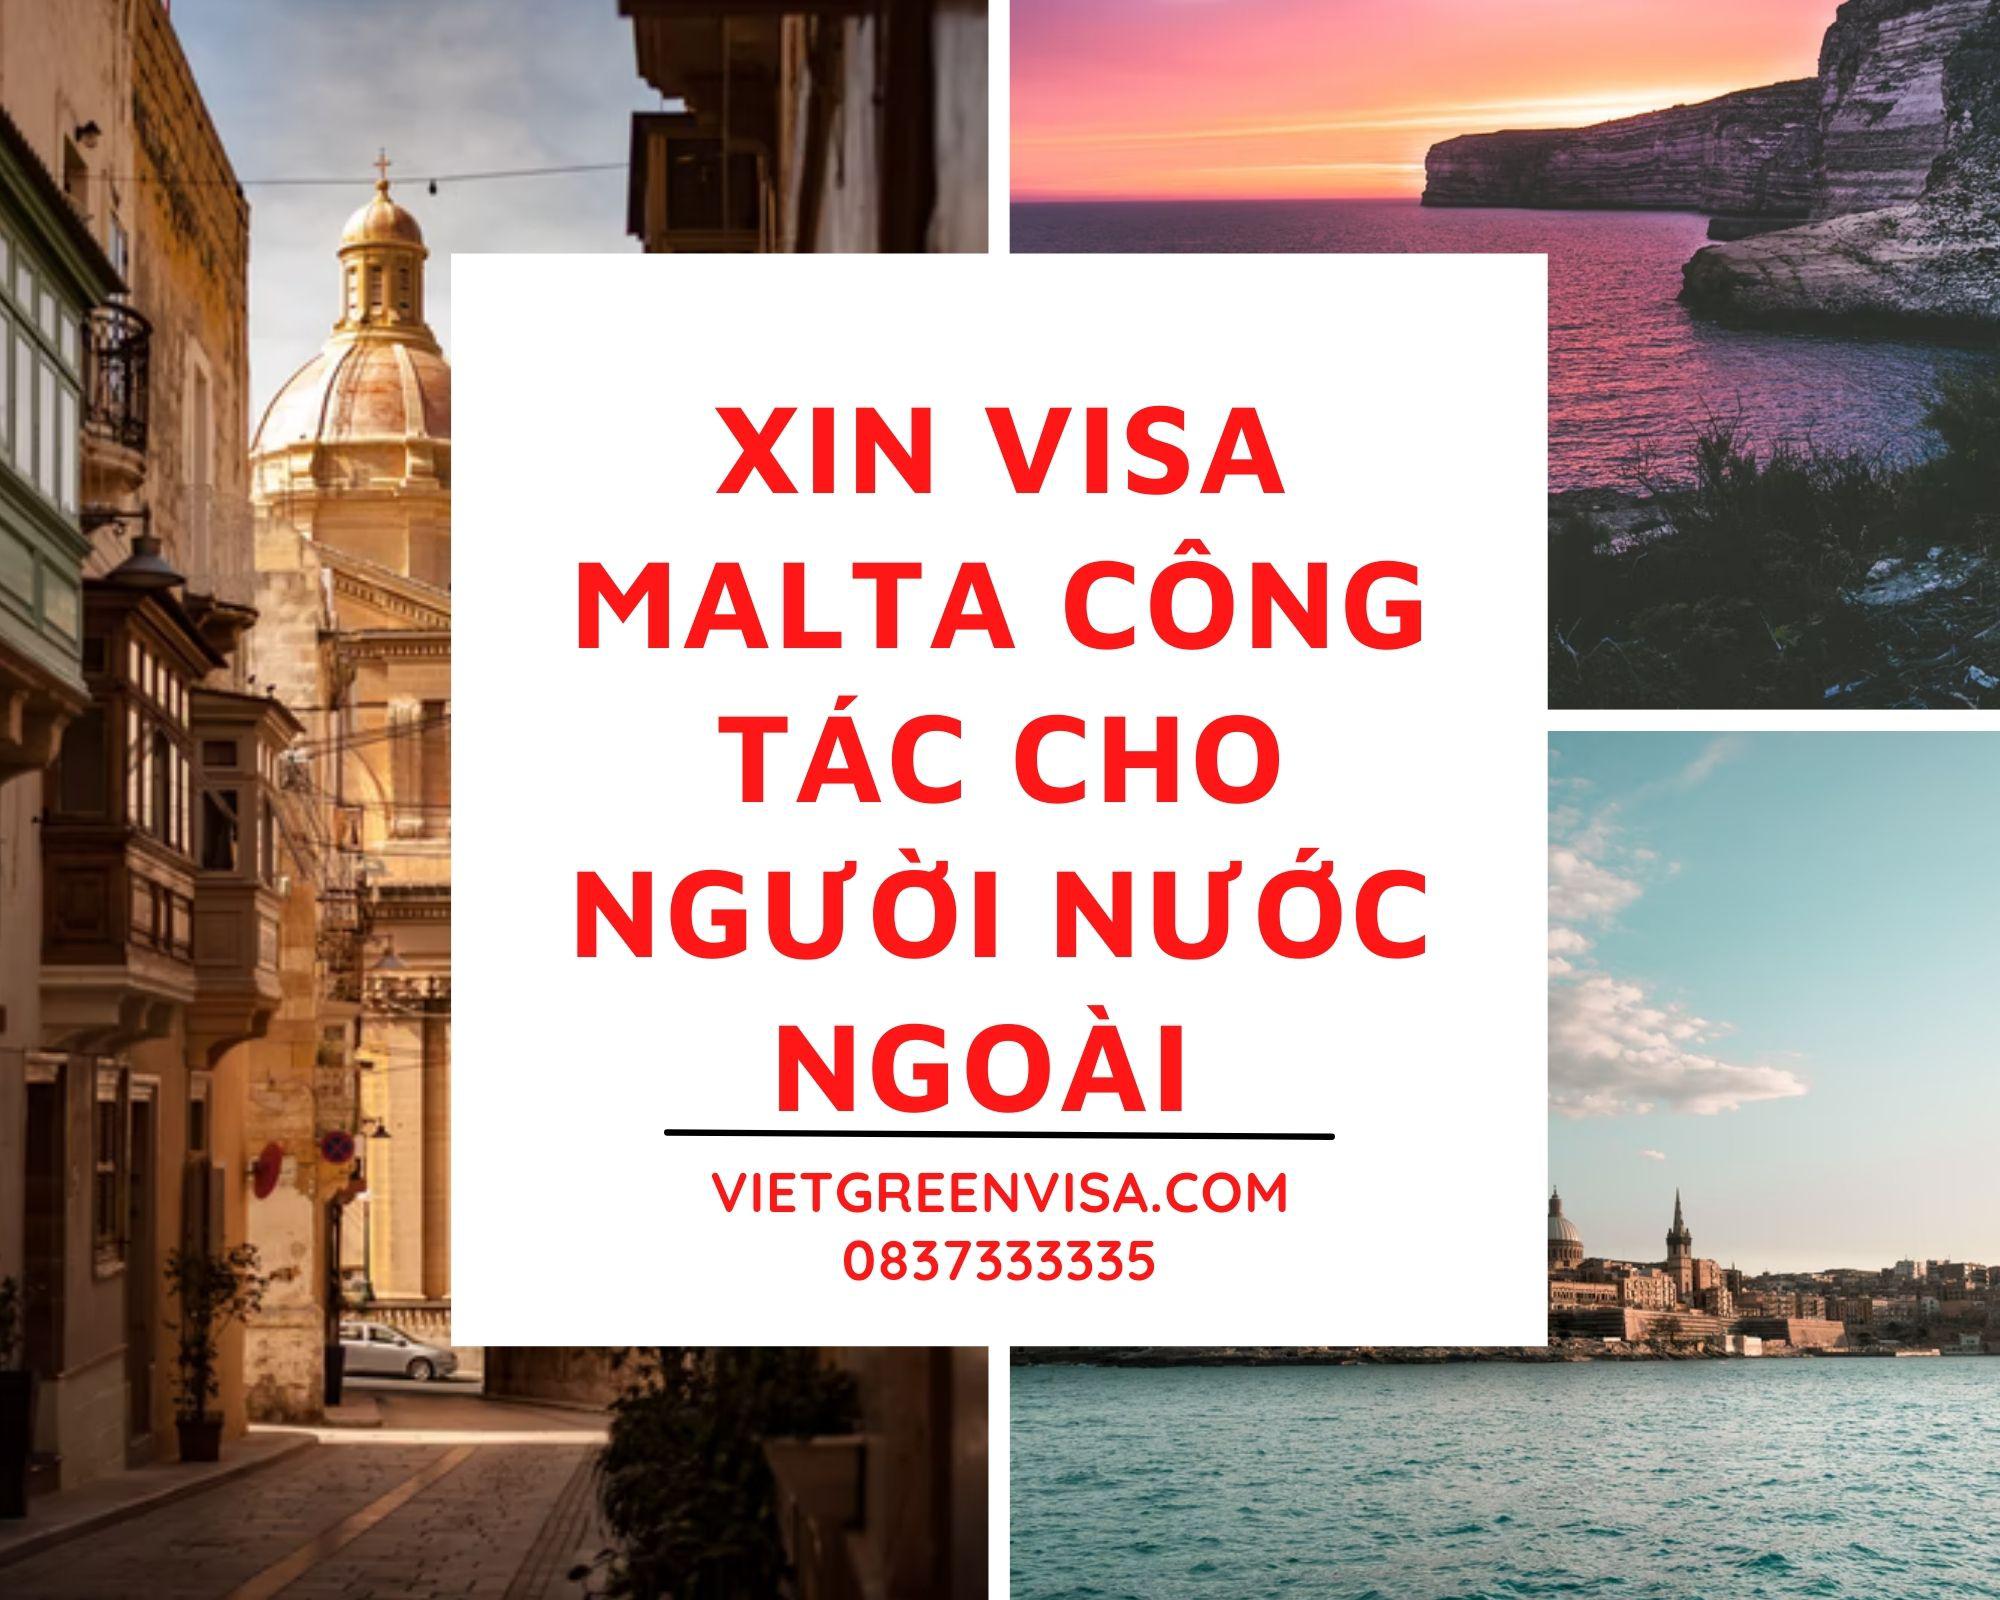 Xin visa công tác Malta cho người nước ngoài